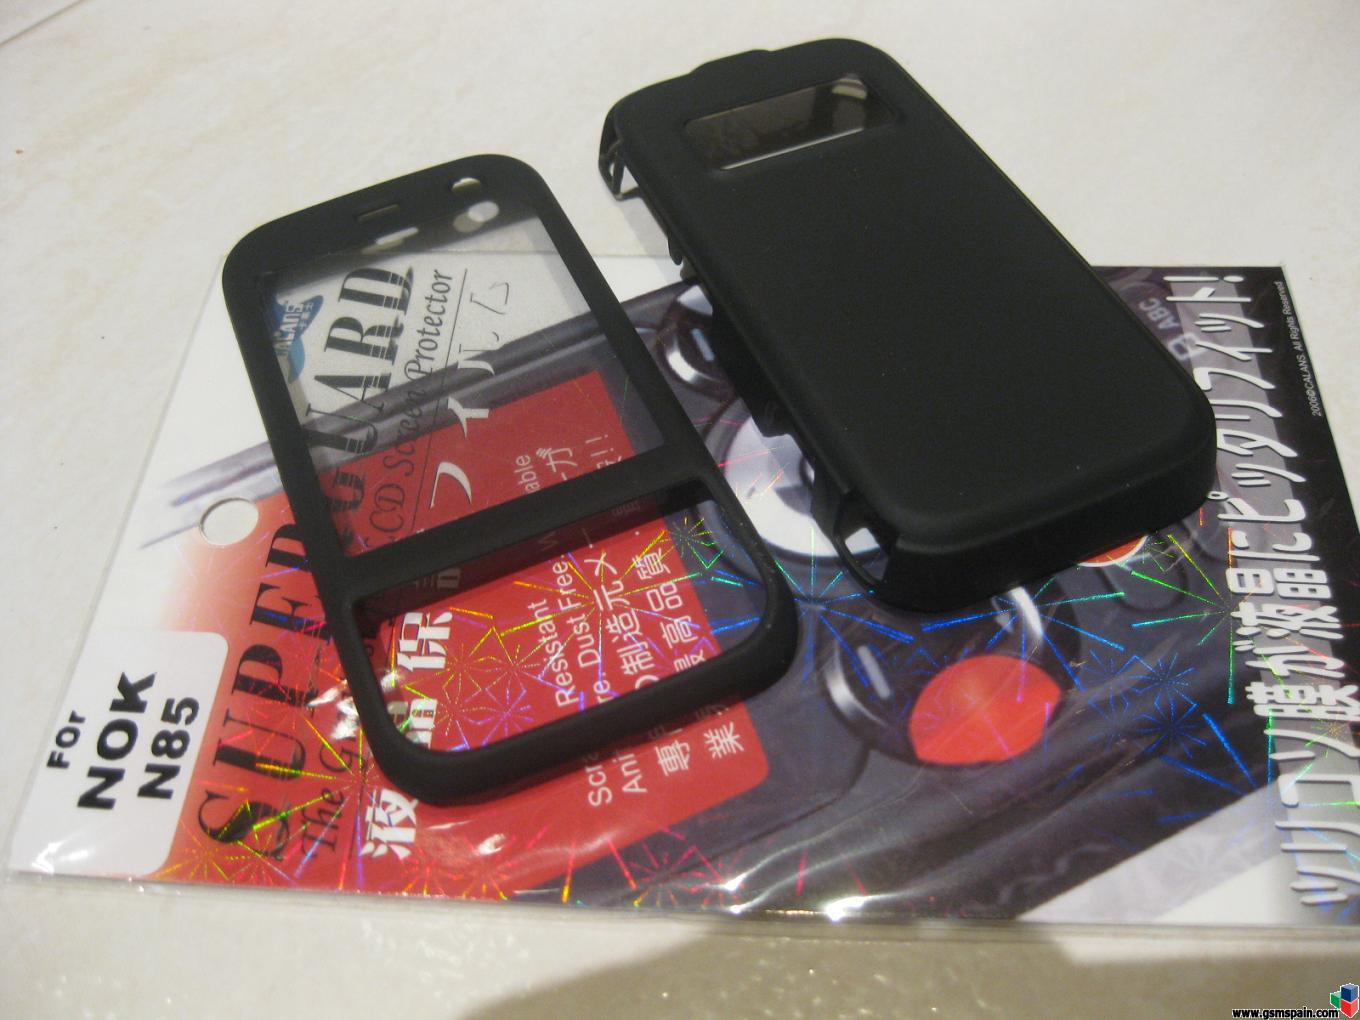 Carcasas para Nokia N85 y N96 con tacto de goma + protector pantalla !! 3,50 !!